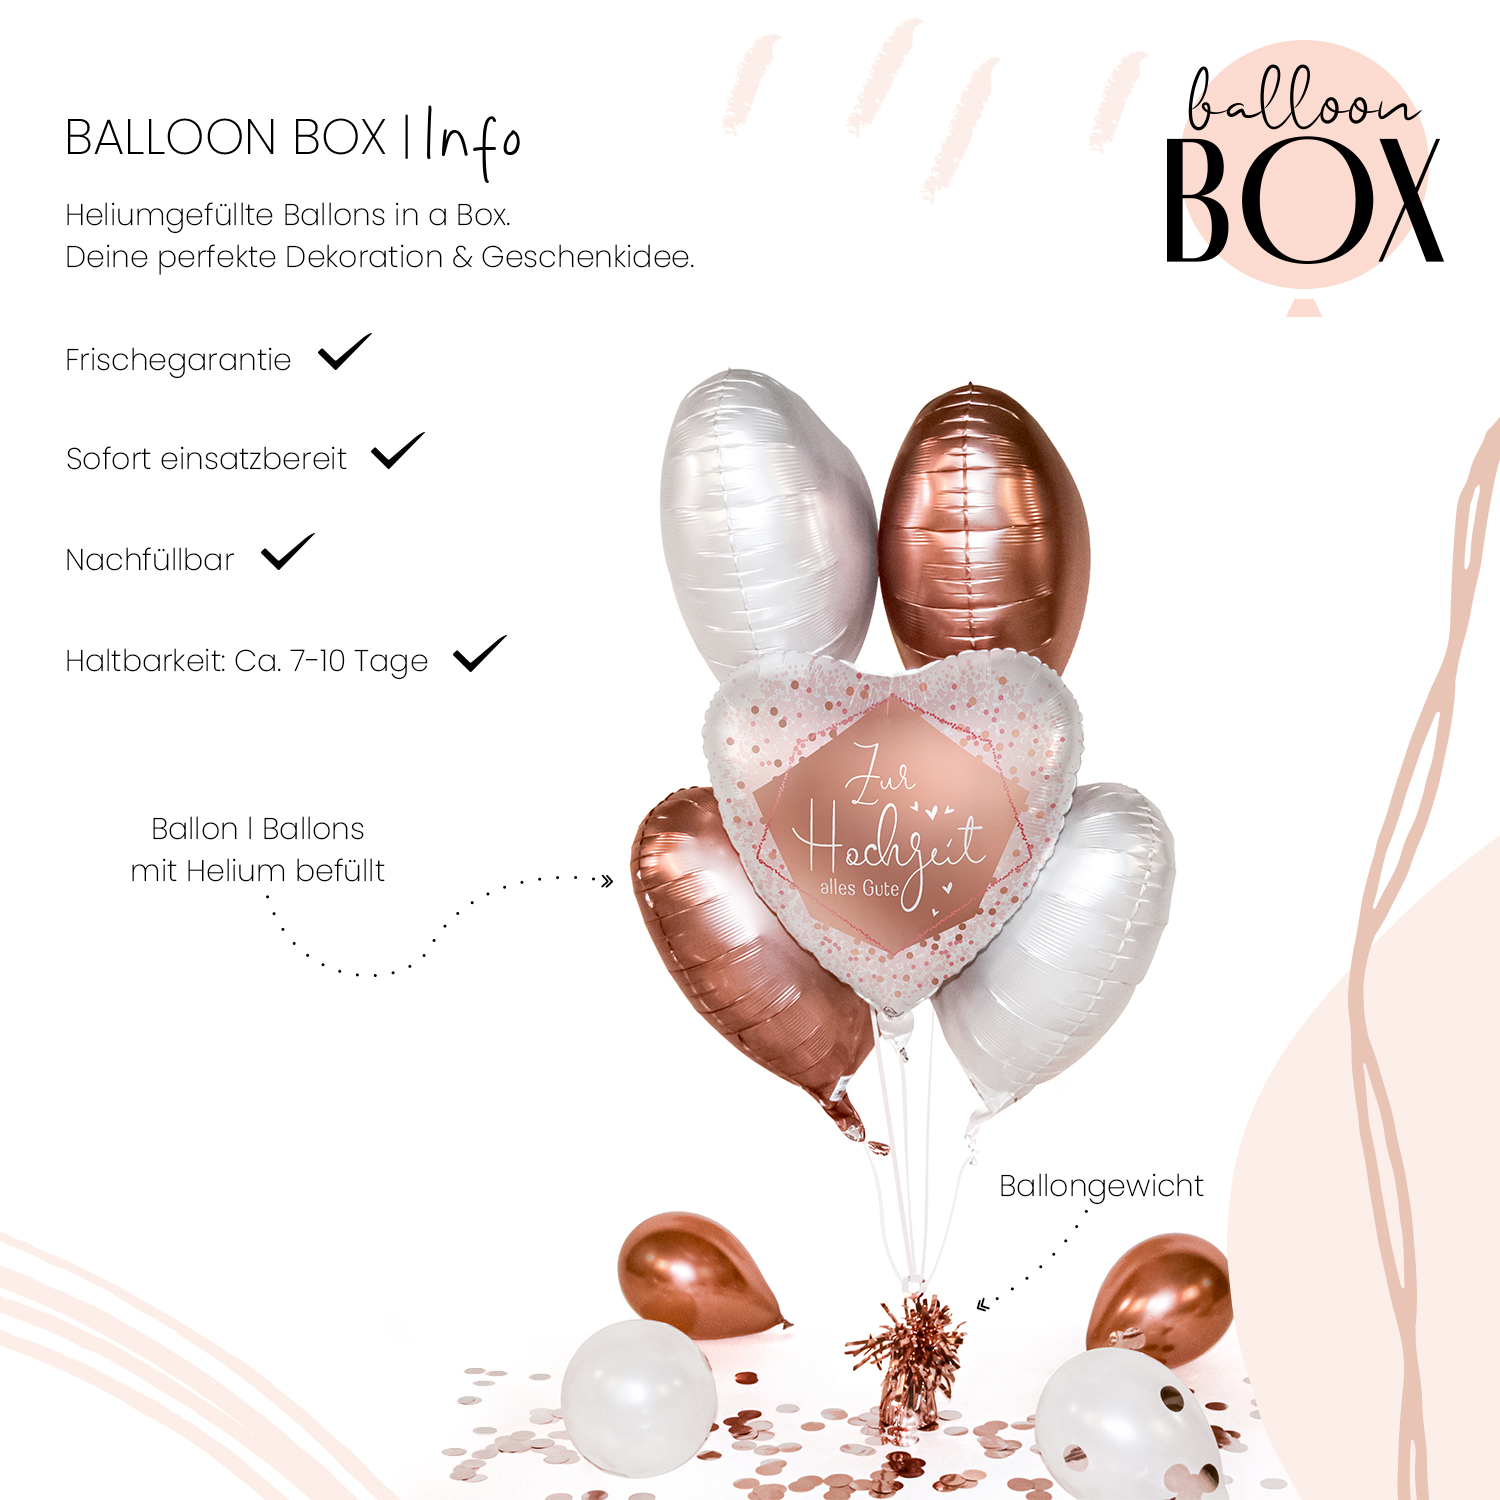 Heliumballon in a Box - Zur Hochzeit alles Gute